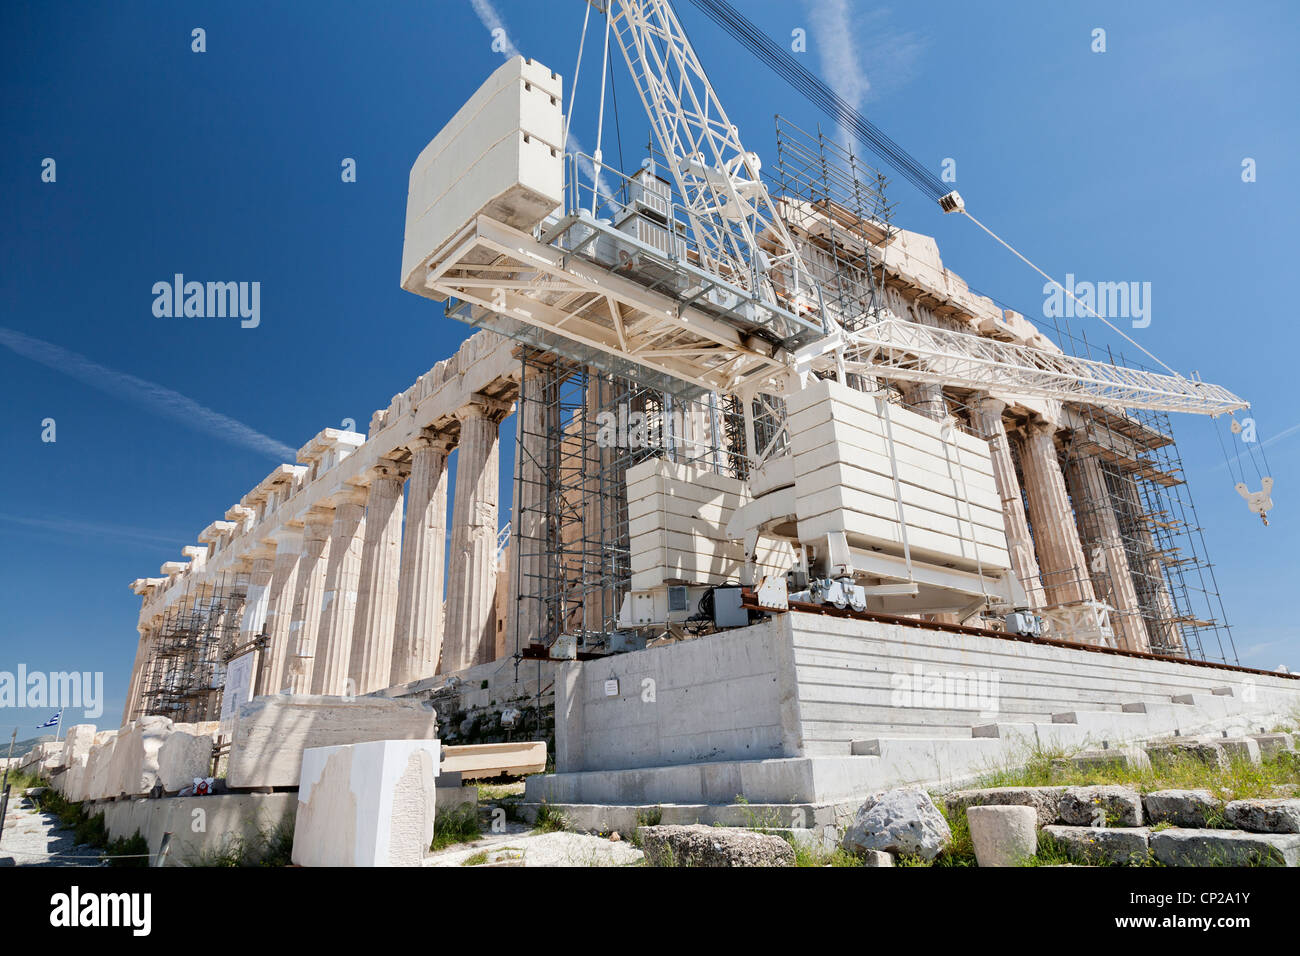 Travaux de restauration du Parthénon. Avril 2012. Acropole d'Athènes, Grèce. Banque D'Images